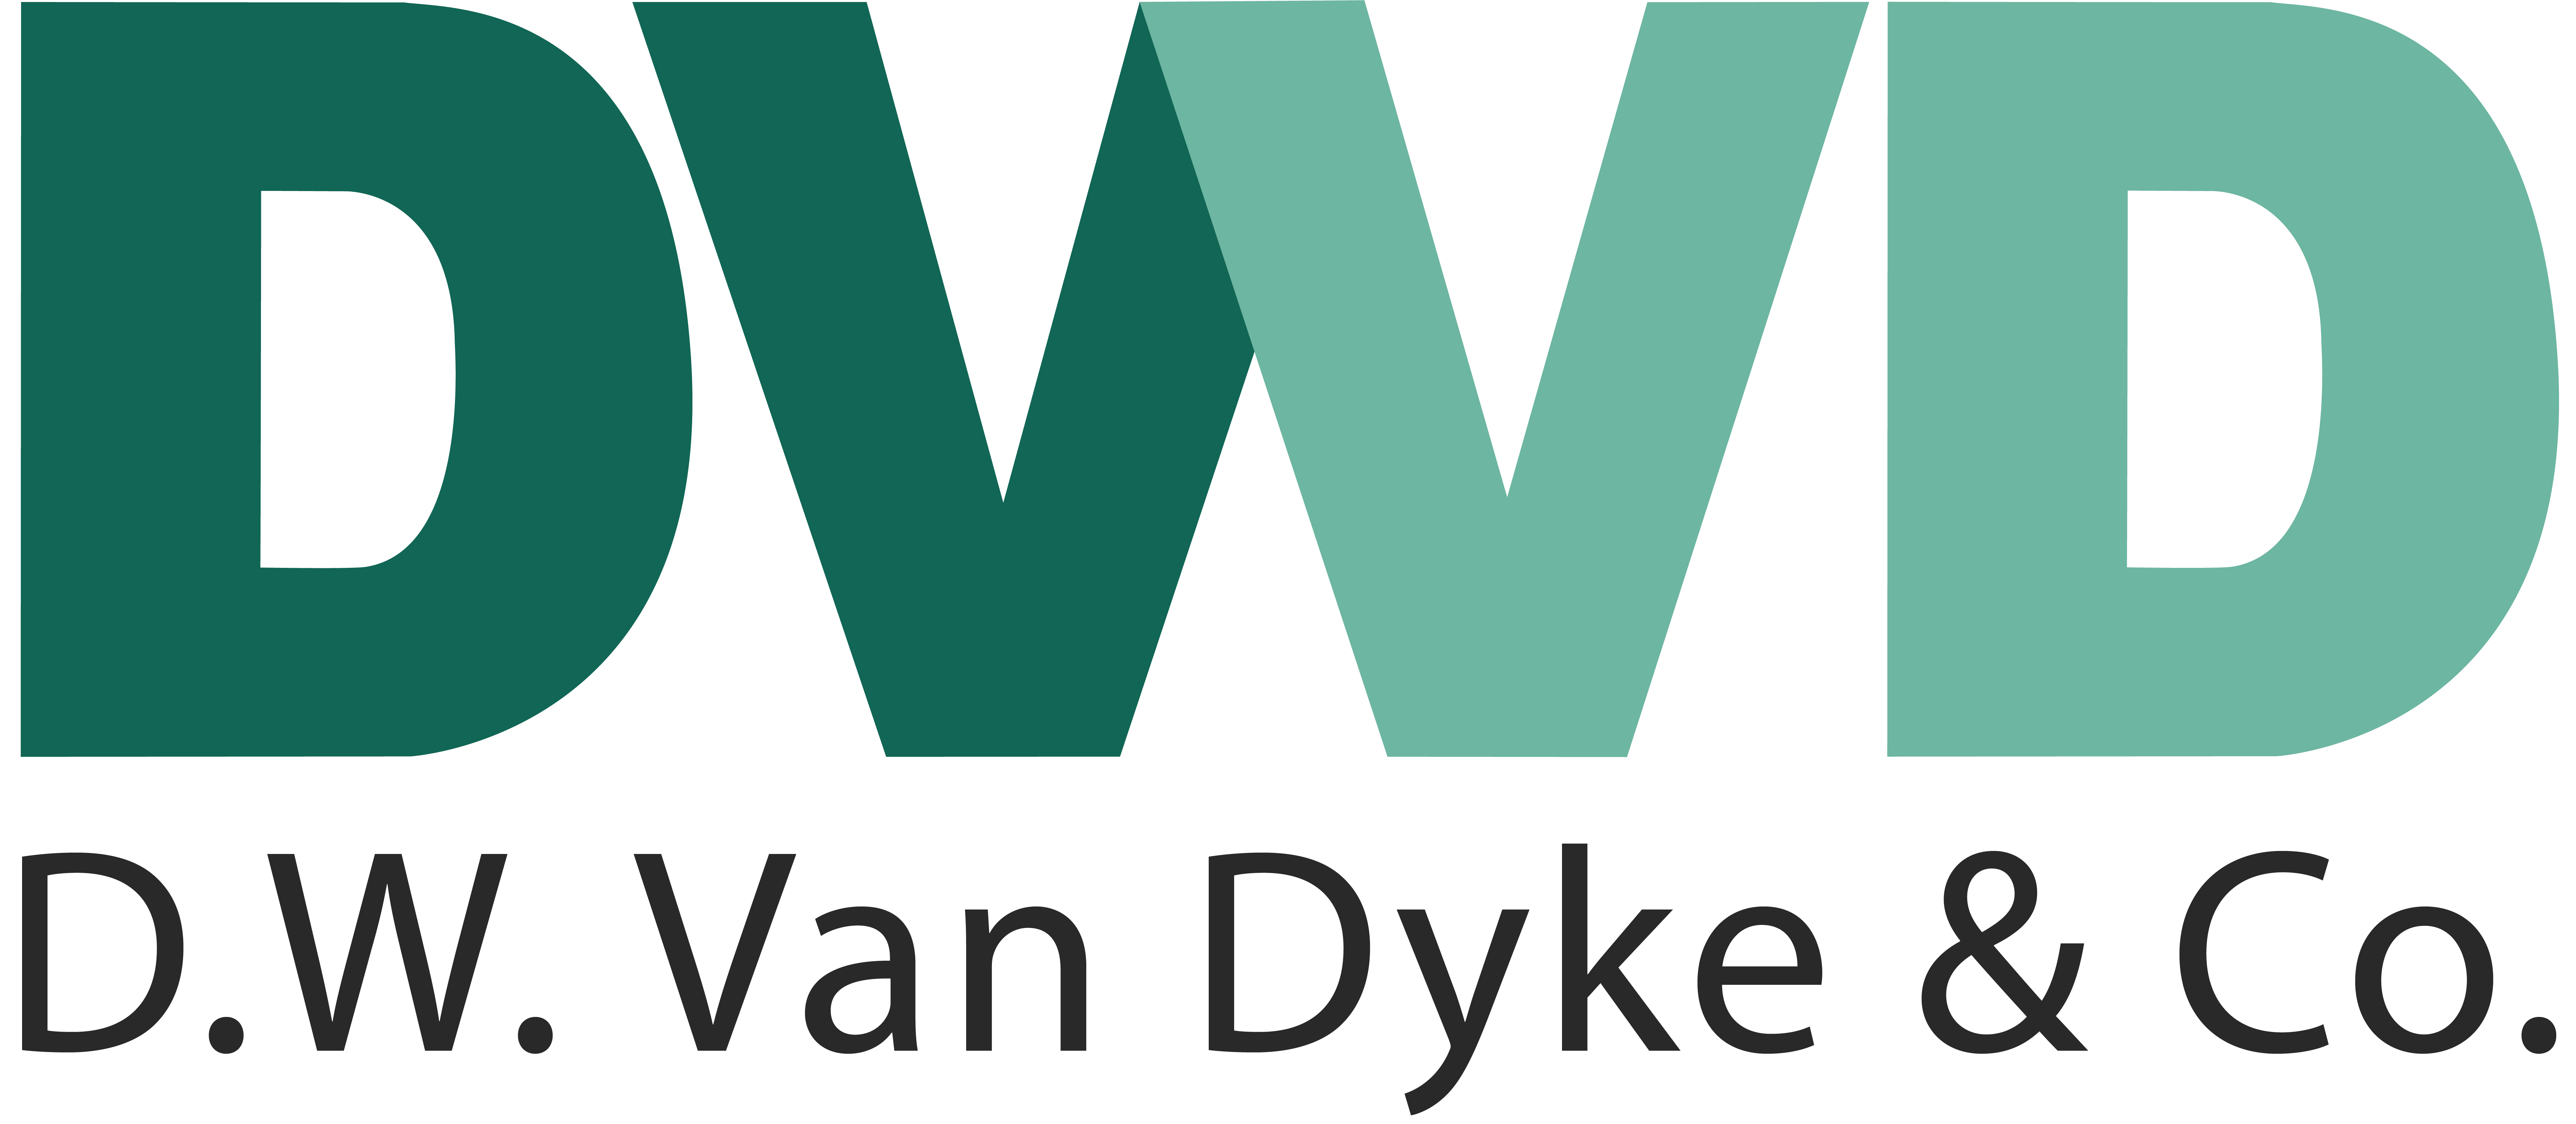 D.W. Van Dyke & Co